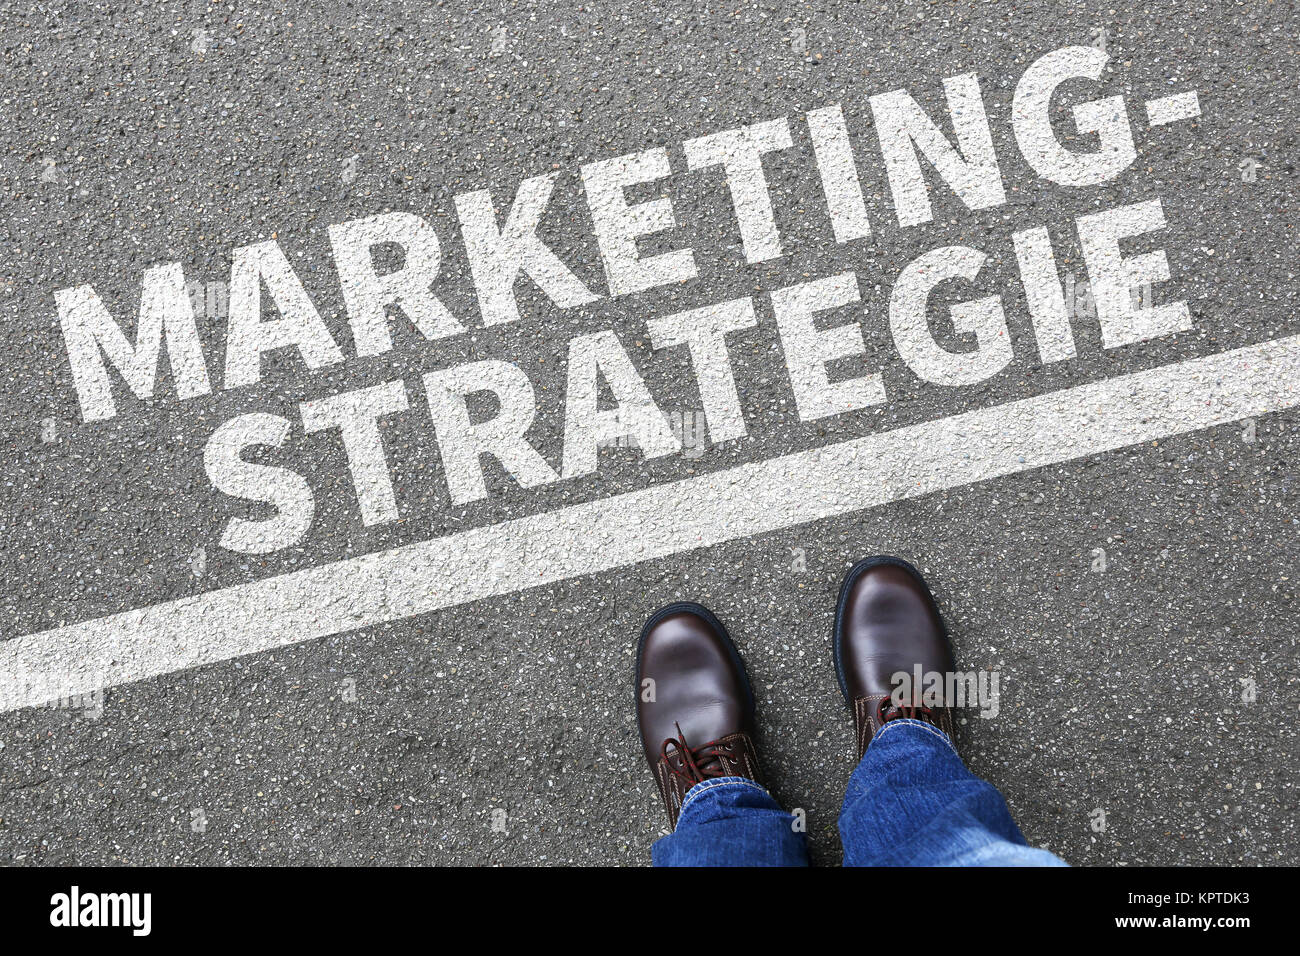 Marketing Strategie Werbung verkaufen Verkauf Business Konzept Erfolg erfolgreich Kunden Stock Photo